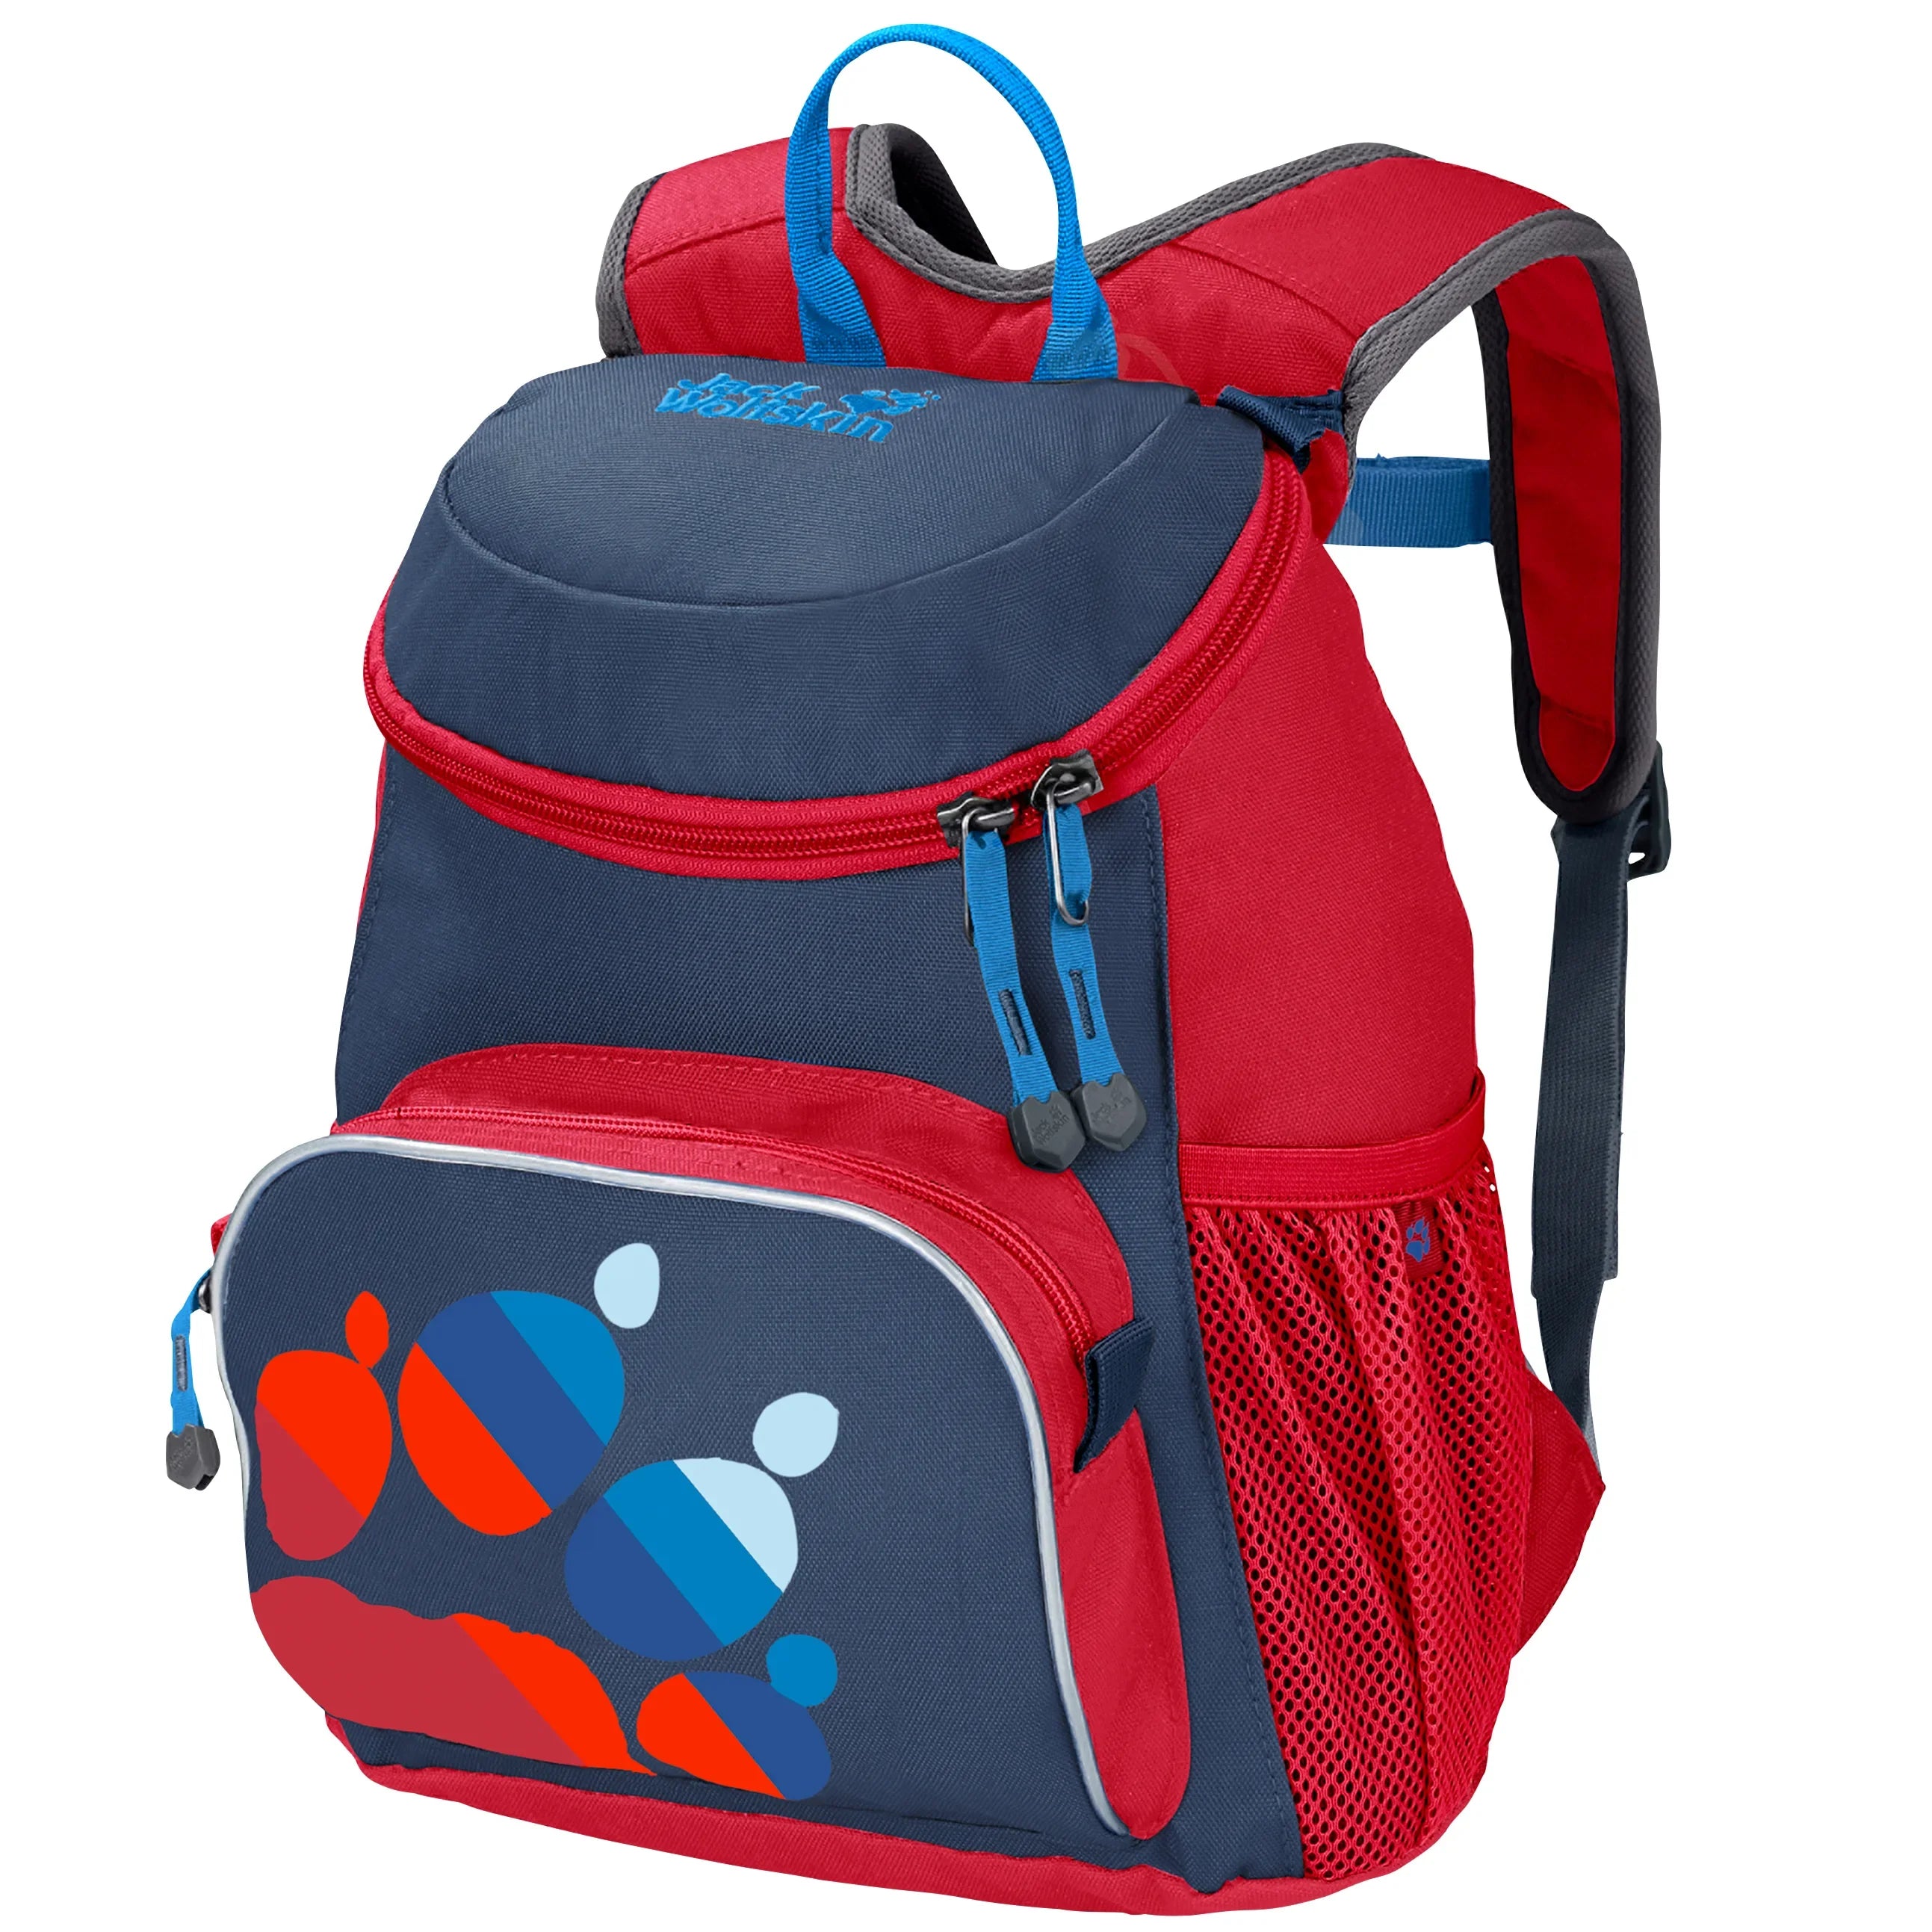 Jack Wolfskin Family Little Joe children's backpack 31 cm - Peak Red